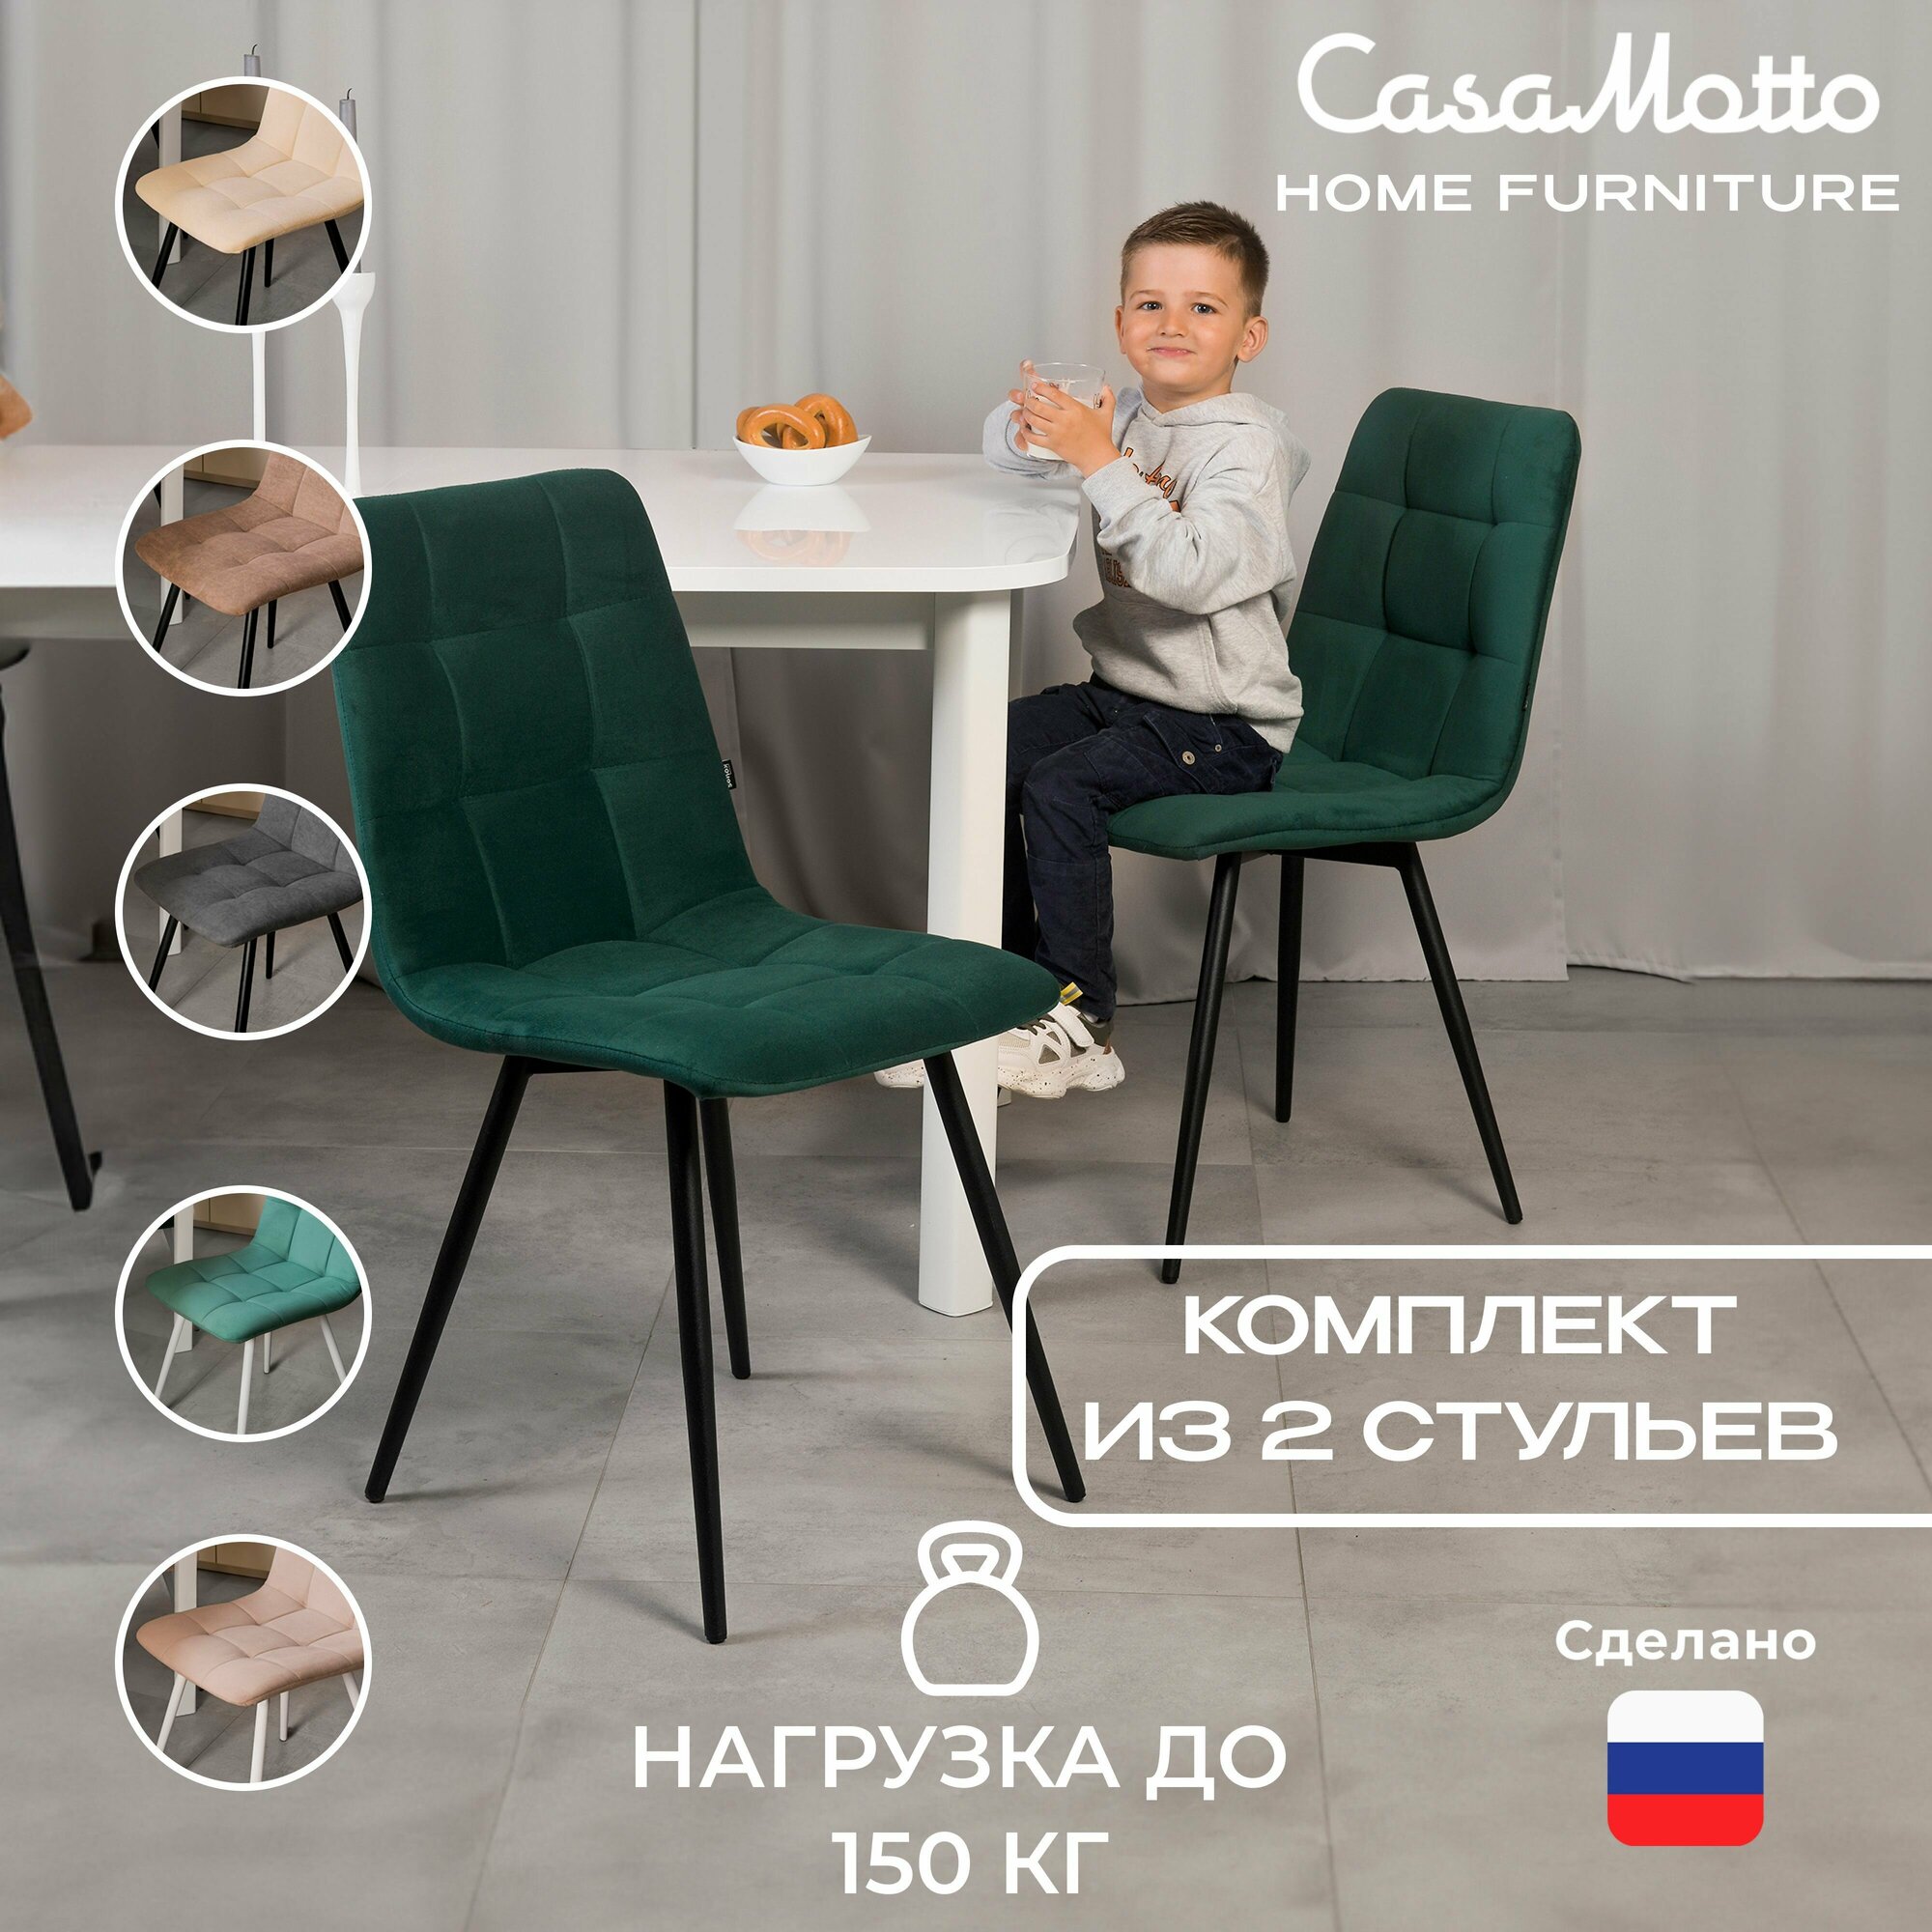 Комплект стульев для кухни CasaMotto, 2 шт